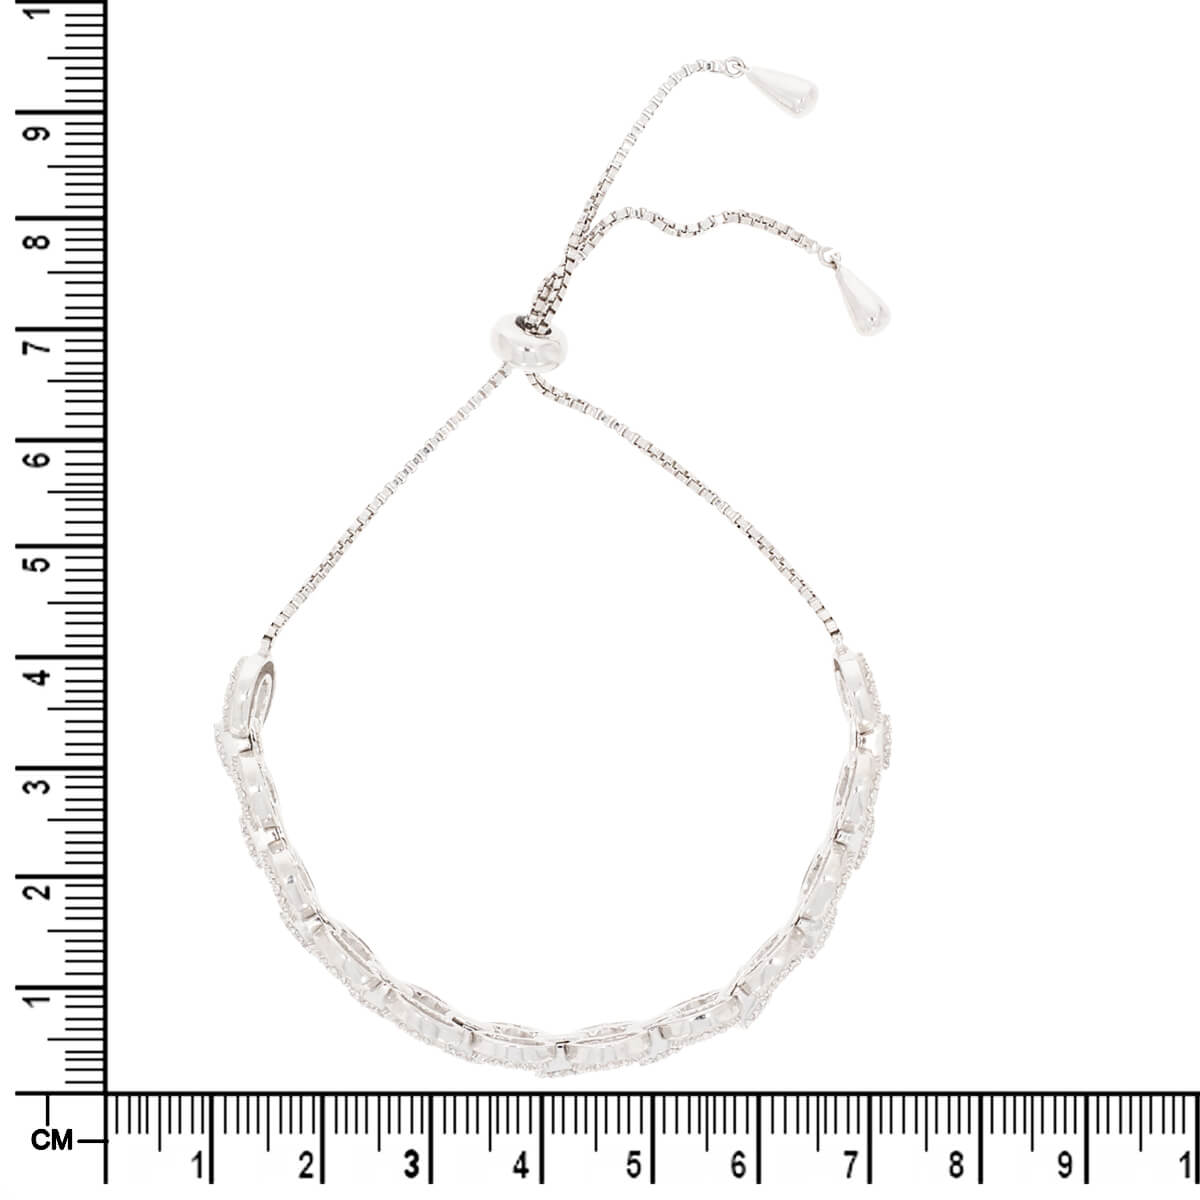 White Diamond Bracelet in Silver